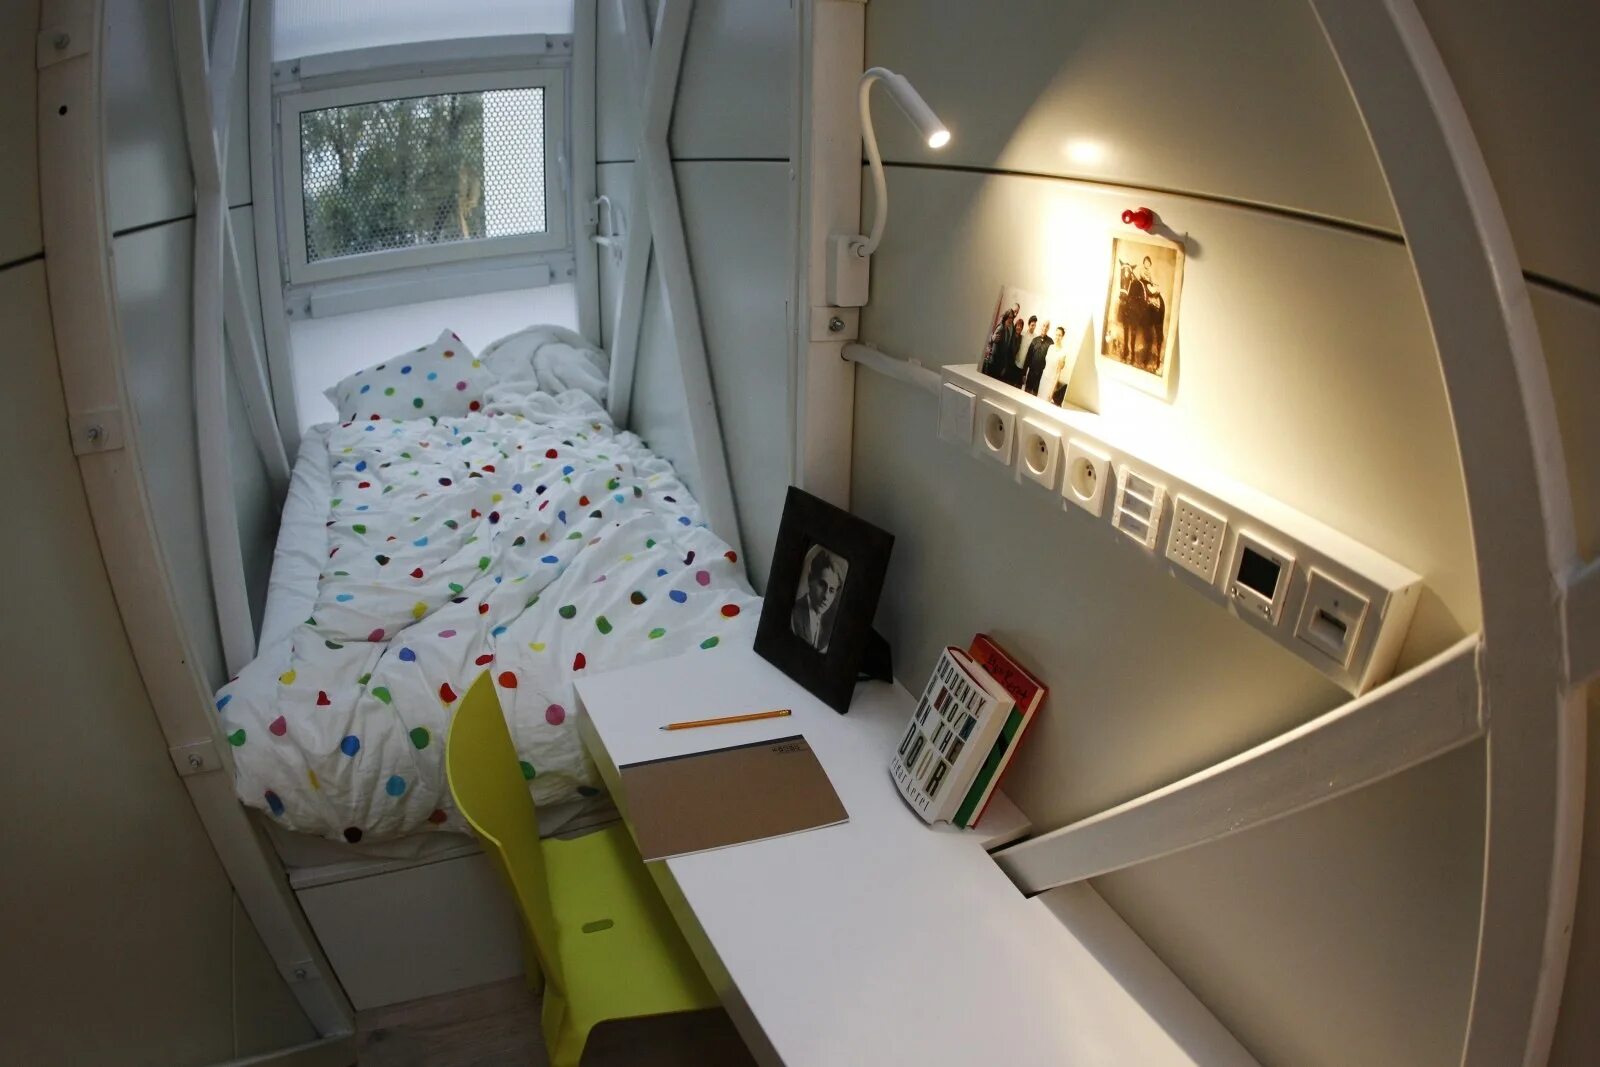 Квартира 6 метров. Самая маленькаквартира. Самая маленькая комната. Самая маленькая квартира в мире. Японские мини квартиры.